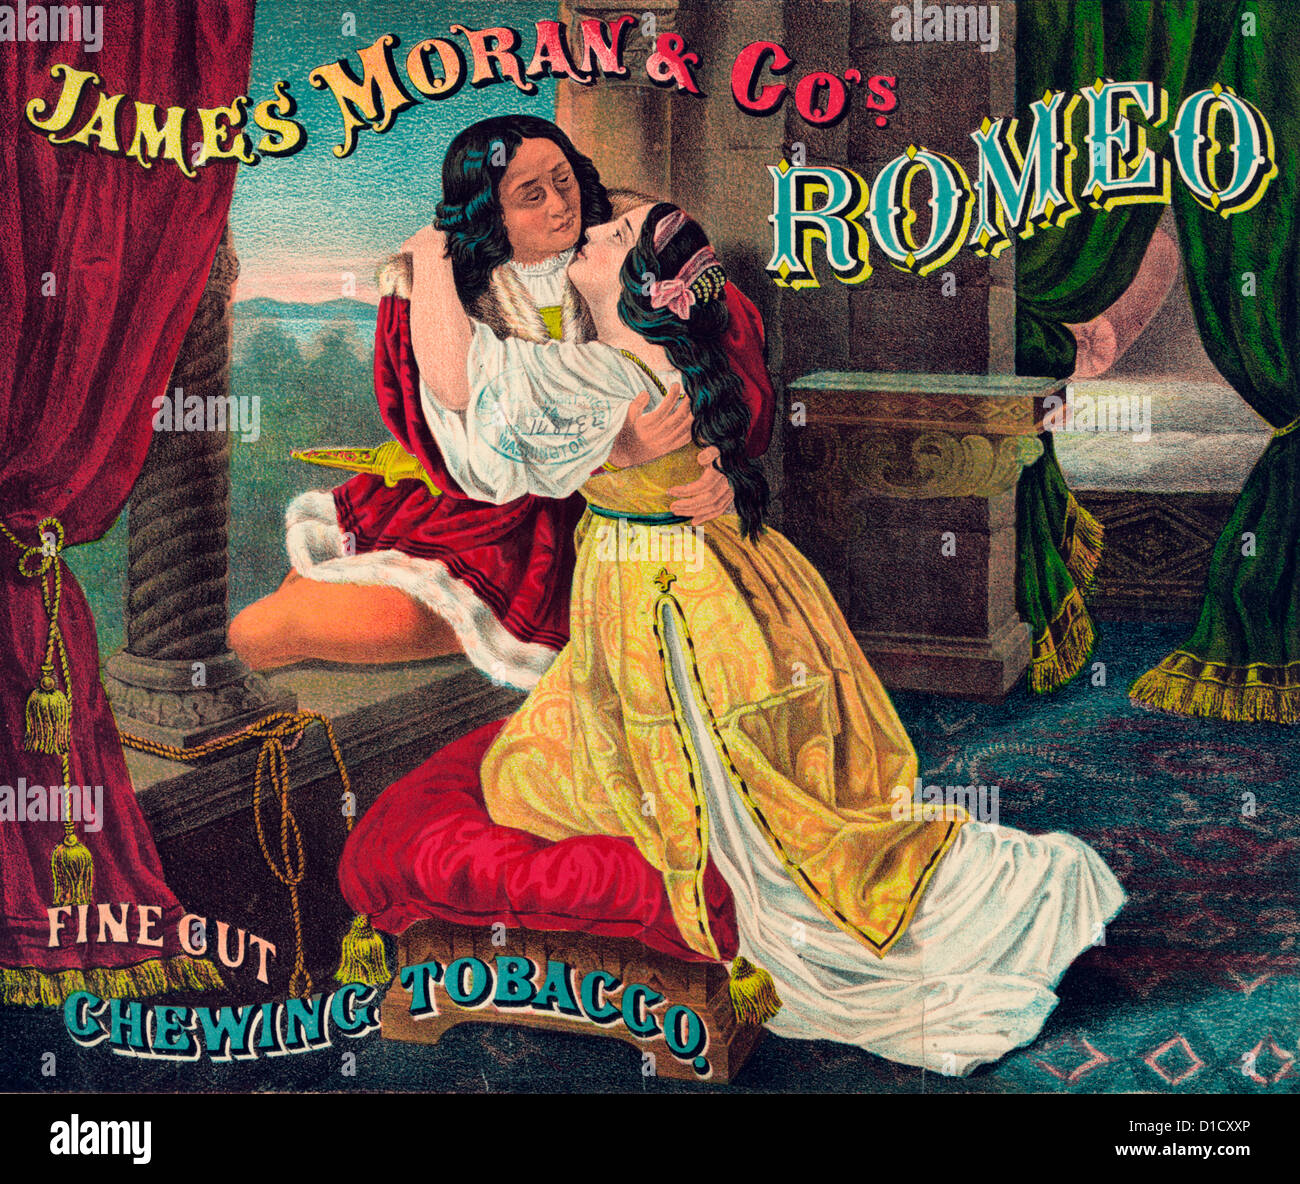 James Moran & Co.'s Romeo, fine cut, le tabac à chiquer du tabac - étiquette de l'emballage montrant Roméo et Juliette enlacés, par une fenêtre ouverte, qu'ils sont en congé de l'autre, vers 1874 Banque D'Images